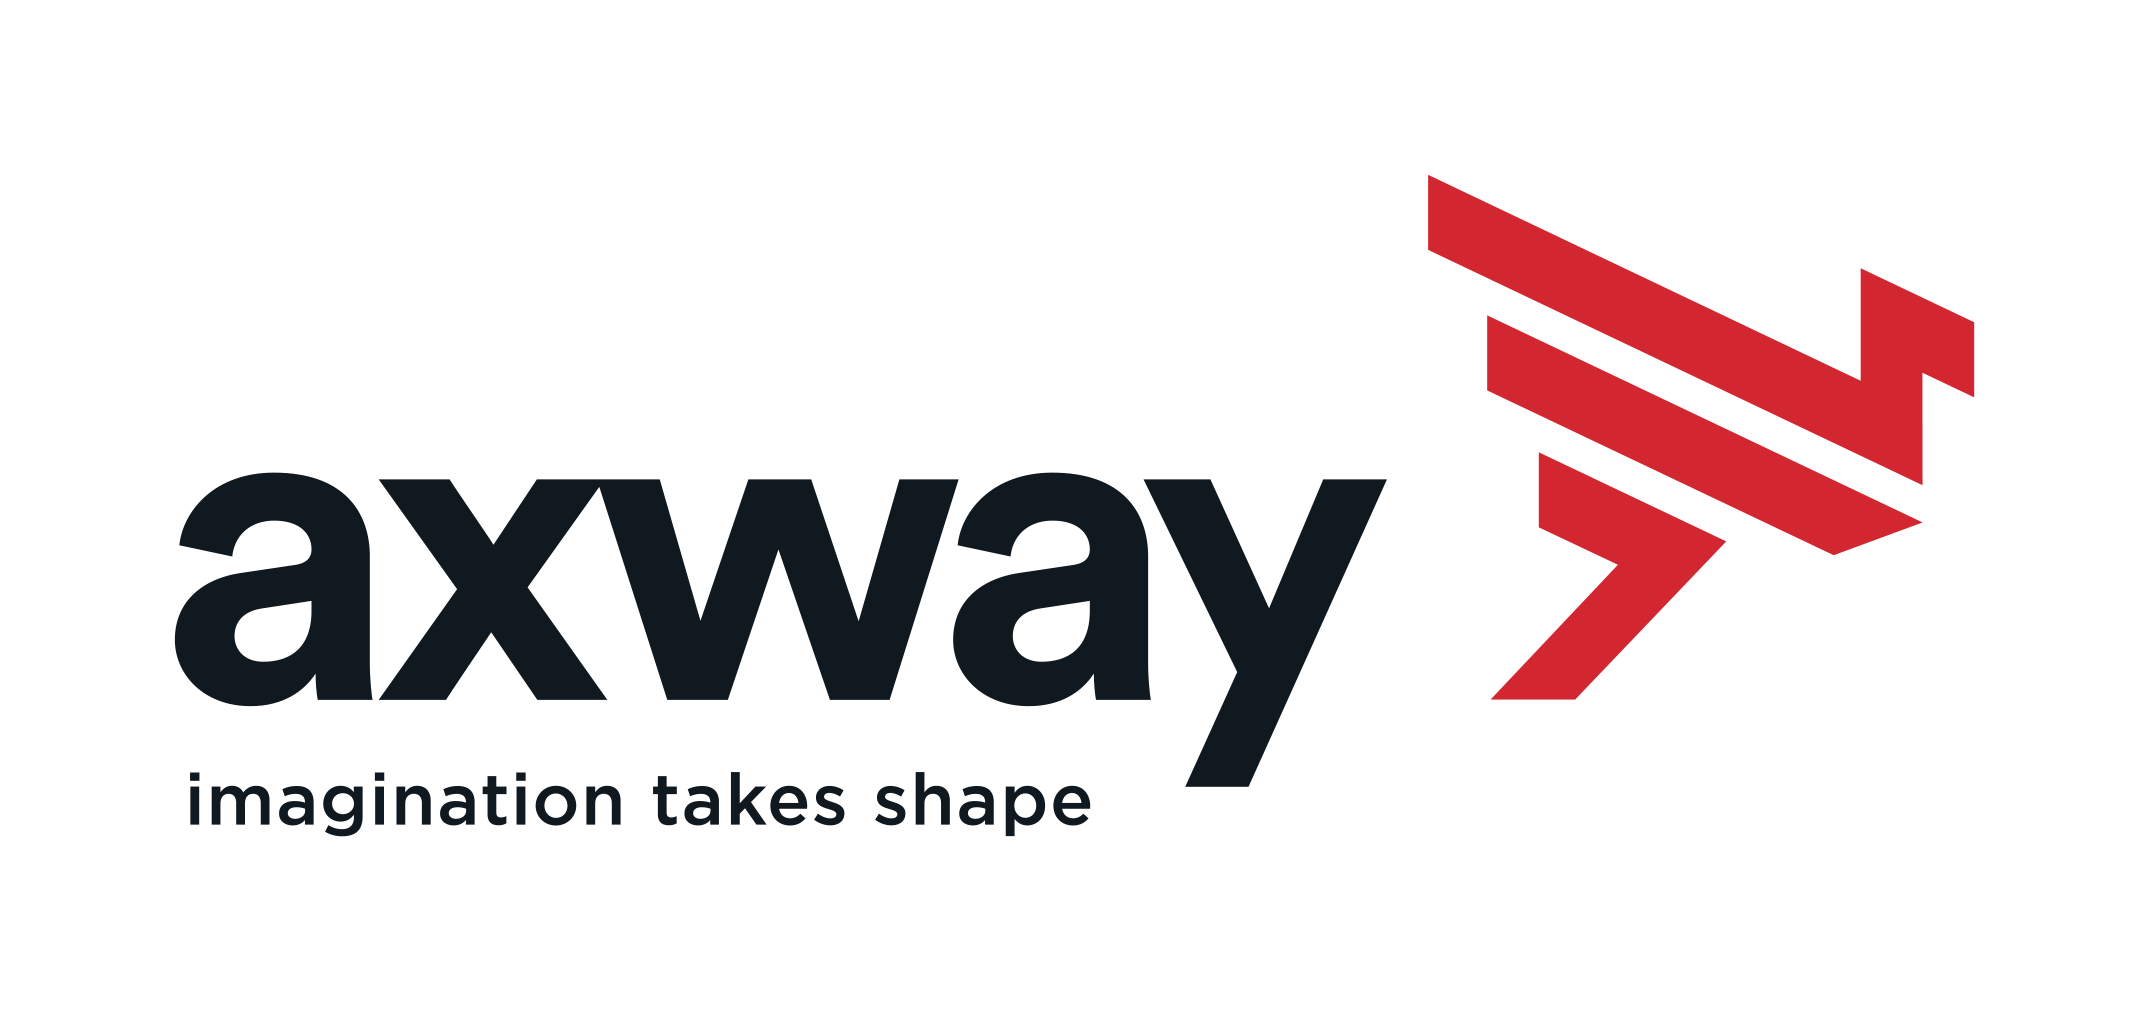 Axway logo tag horiz